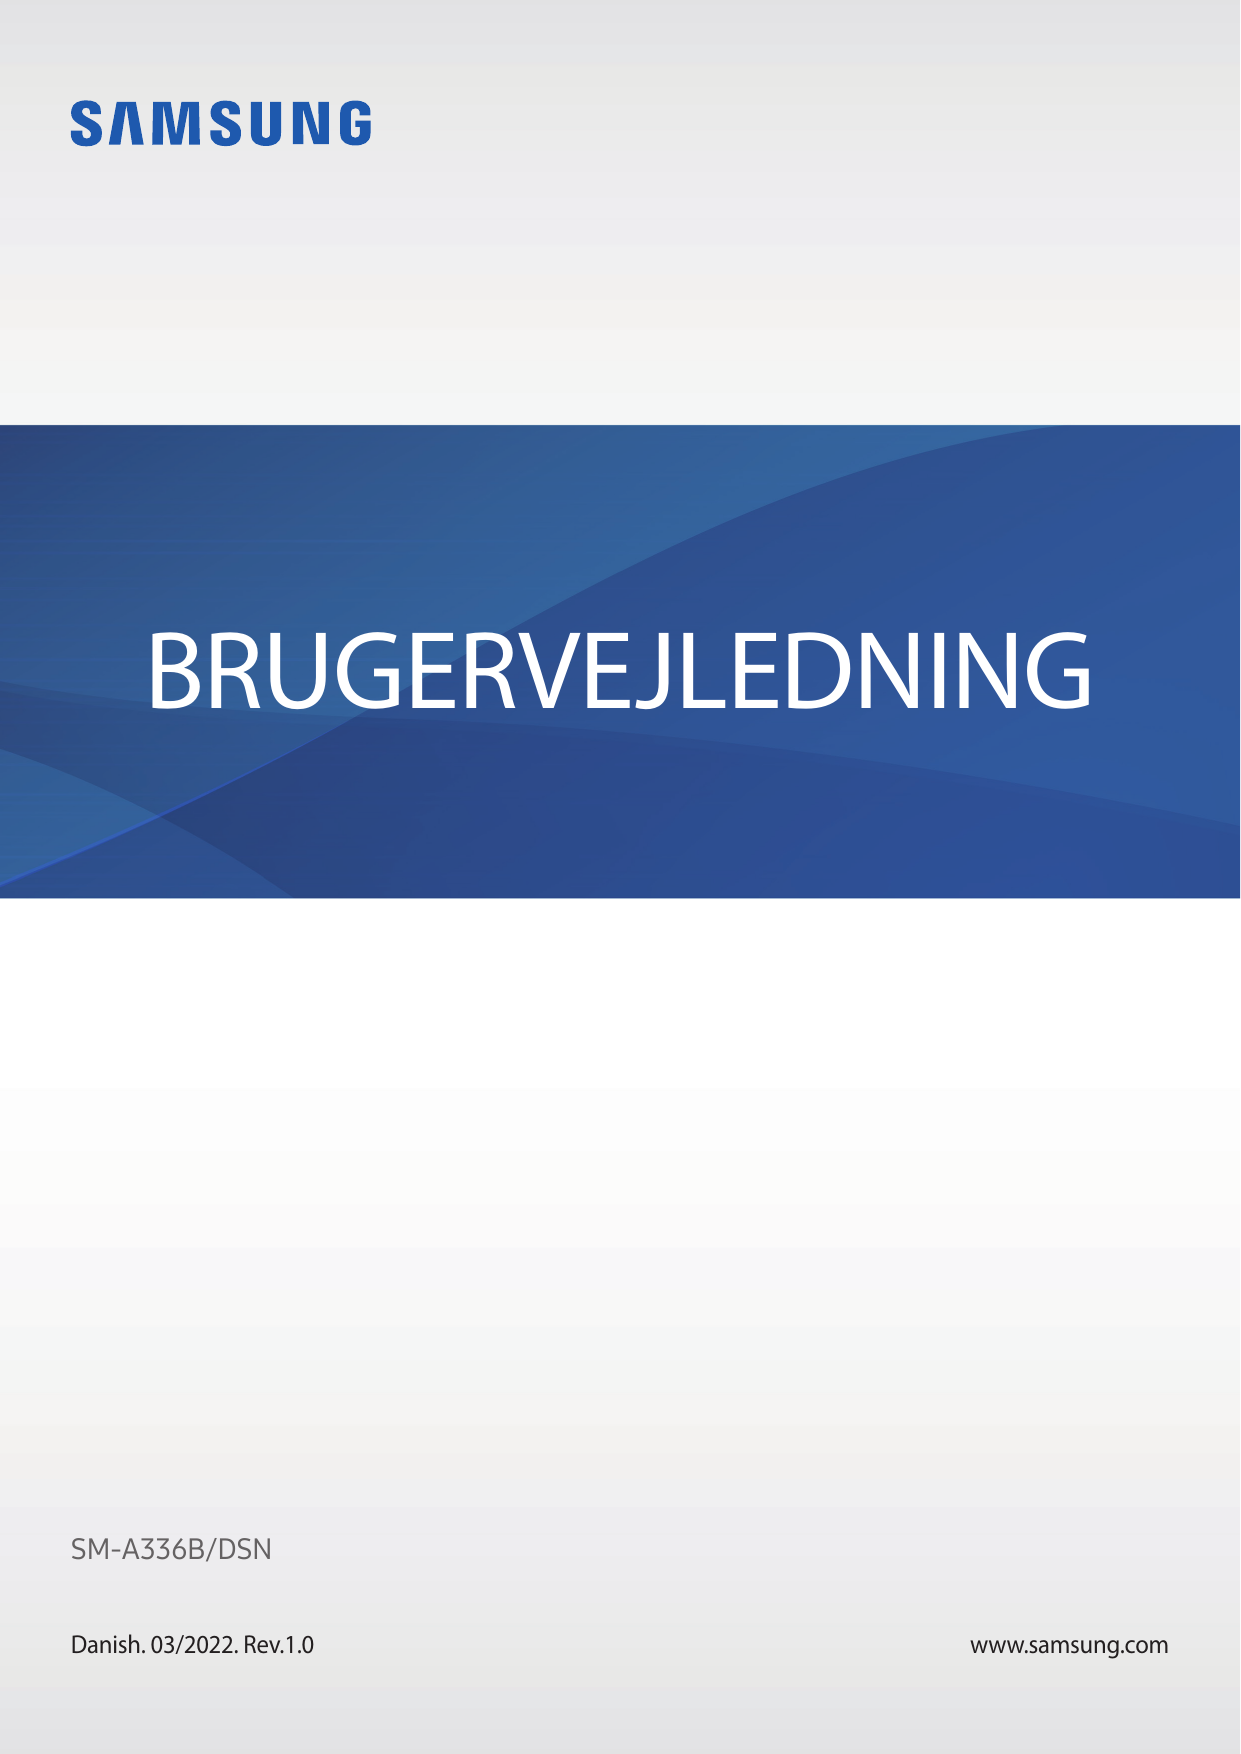 BRUGERVEJLEDNINGSM-A336B/DSNDanish. 03/2022. Rev.1.0www.samsung.com